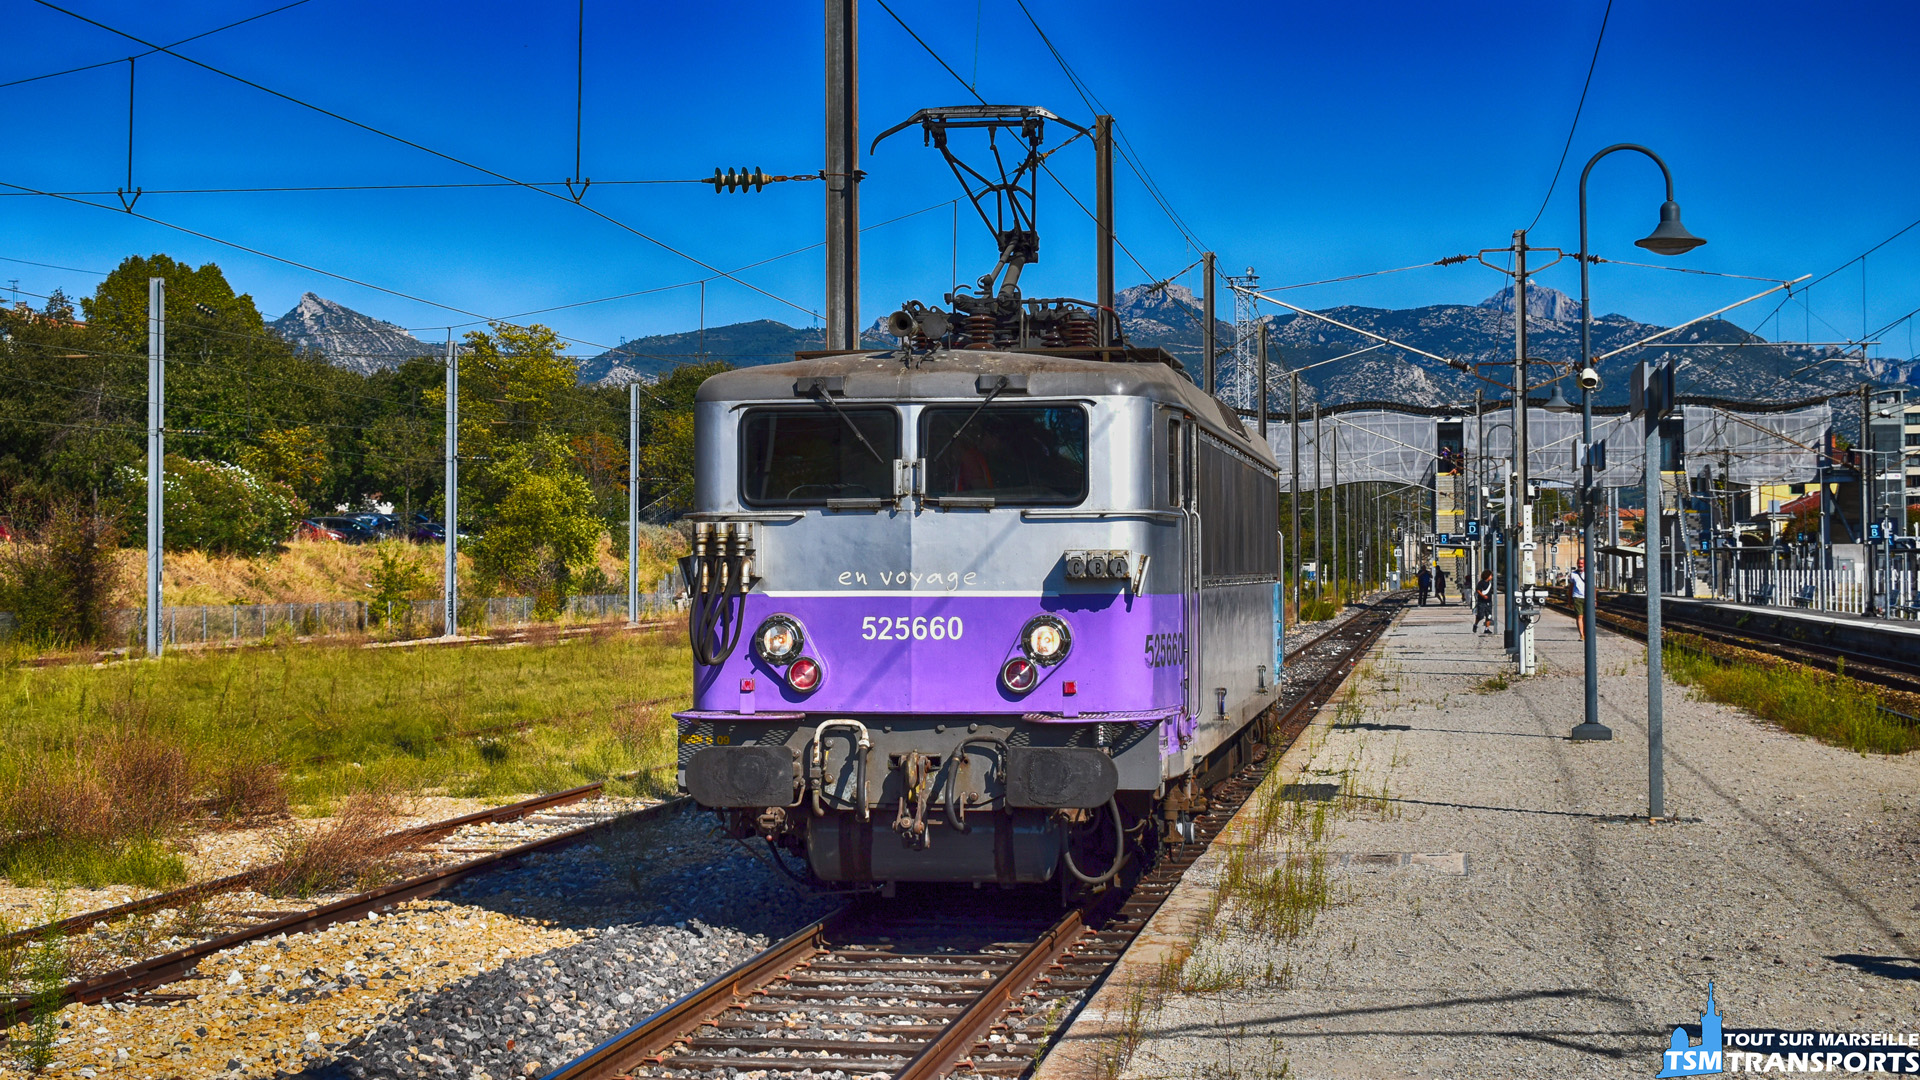 Après un trajet en HLP entre Avignon et Aubagne, la BB25660 de l'association APCC6570 se repose en gare d'Aubagne avant d'effectuer le trajet dans le sens opposé dans 1 heure environ.
.
Cette sortie était l'occasion de faire une marche d'essais de la #locomotive sous les deux tensions principales du réseau ferré français (À savoir le 1,5Kv et le 25Kv), pour ce qui est de la portion de voie entre Marseille et Aubagne, c'est à partir de la Gare de la Pomme que l'on change de tension.
.
La marche de #rodage a permis de vérifier le bon fonctionnement de tout les #organes #électrique de la machine, surtout pour la partie 25kv, car depuis sa sauvegarde par l'association, celle ci n'avais plus roulée sous cette tension.
.
La BB25660 s'est présentée à nous voie D et a stationnée une bonne heure sur cette voie avec en fond le Pic de Bertagne.
.
ℹ️ BB25660 de l'association APCC 6570 en marche d'essais entre Avignon et Aubagne.
.
📍Gare d'Aubagne, voie D.
.
↔️ HLP : Avignon - Cavaillon - Miramas- Marseille Blancarde - Aubagne.
.
📸 Nikon D5600 | f/7.1 | Expo : 1/2000" | ISO : 400 | distance focale : 38mm | sans flash.
.
📅 29 septembre 2018 à 15:35.
.
👨 Sébastien ESPOSITO.